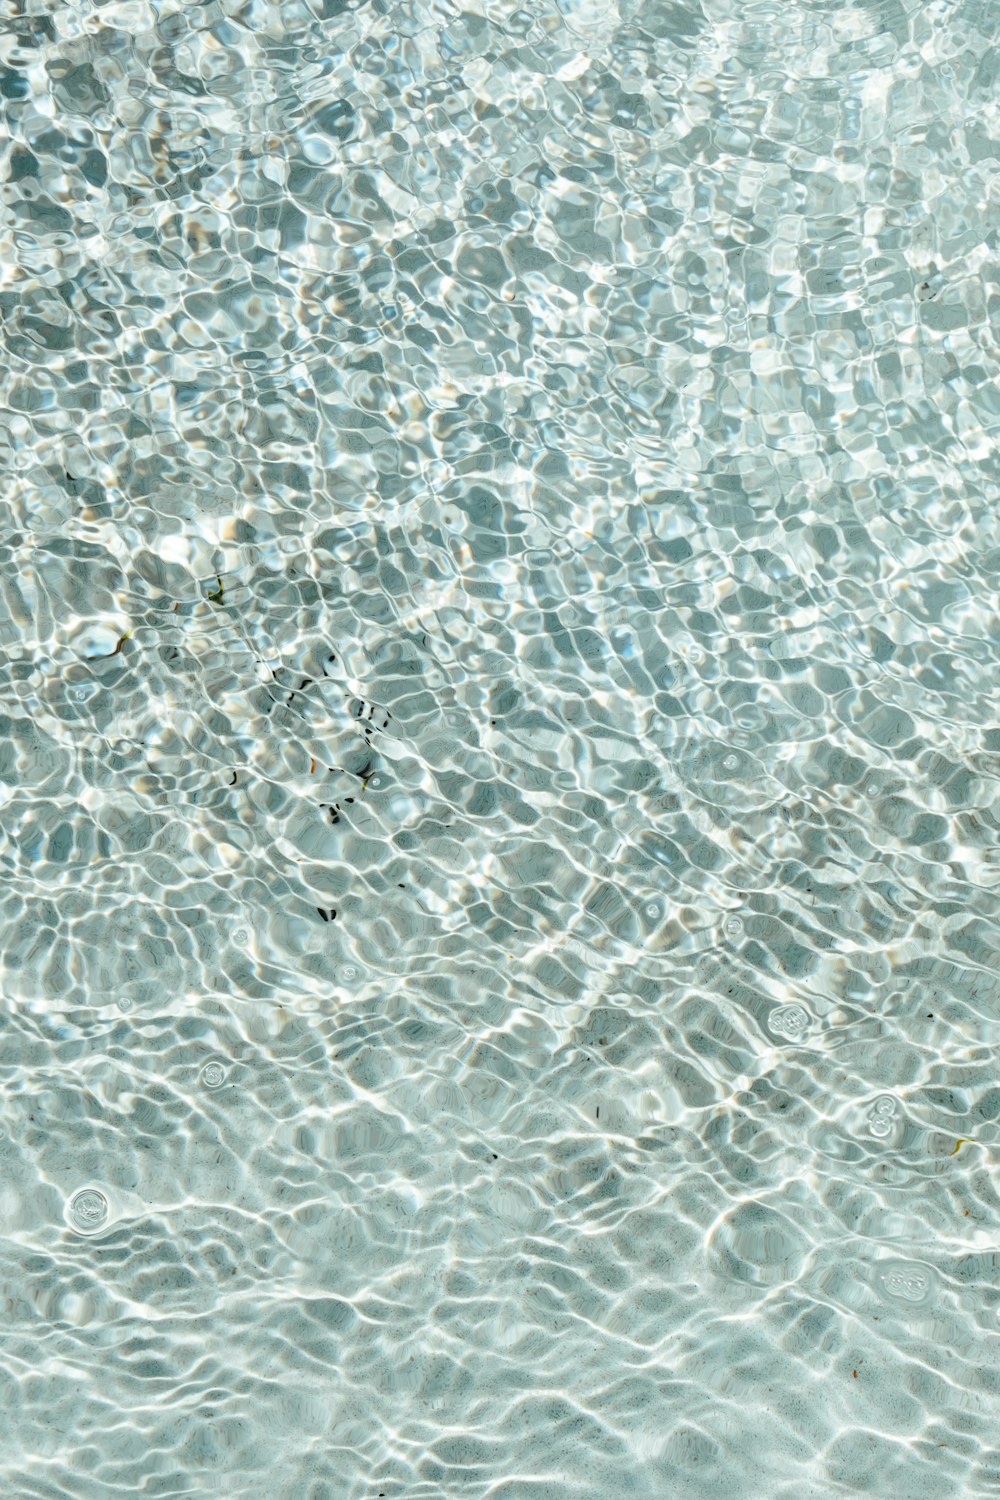 um close up de uma piscina com ondulações de água